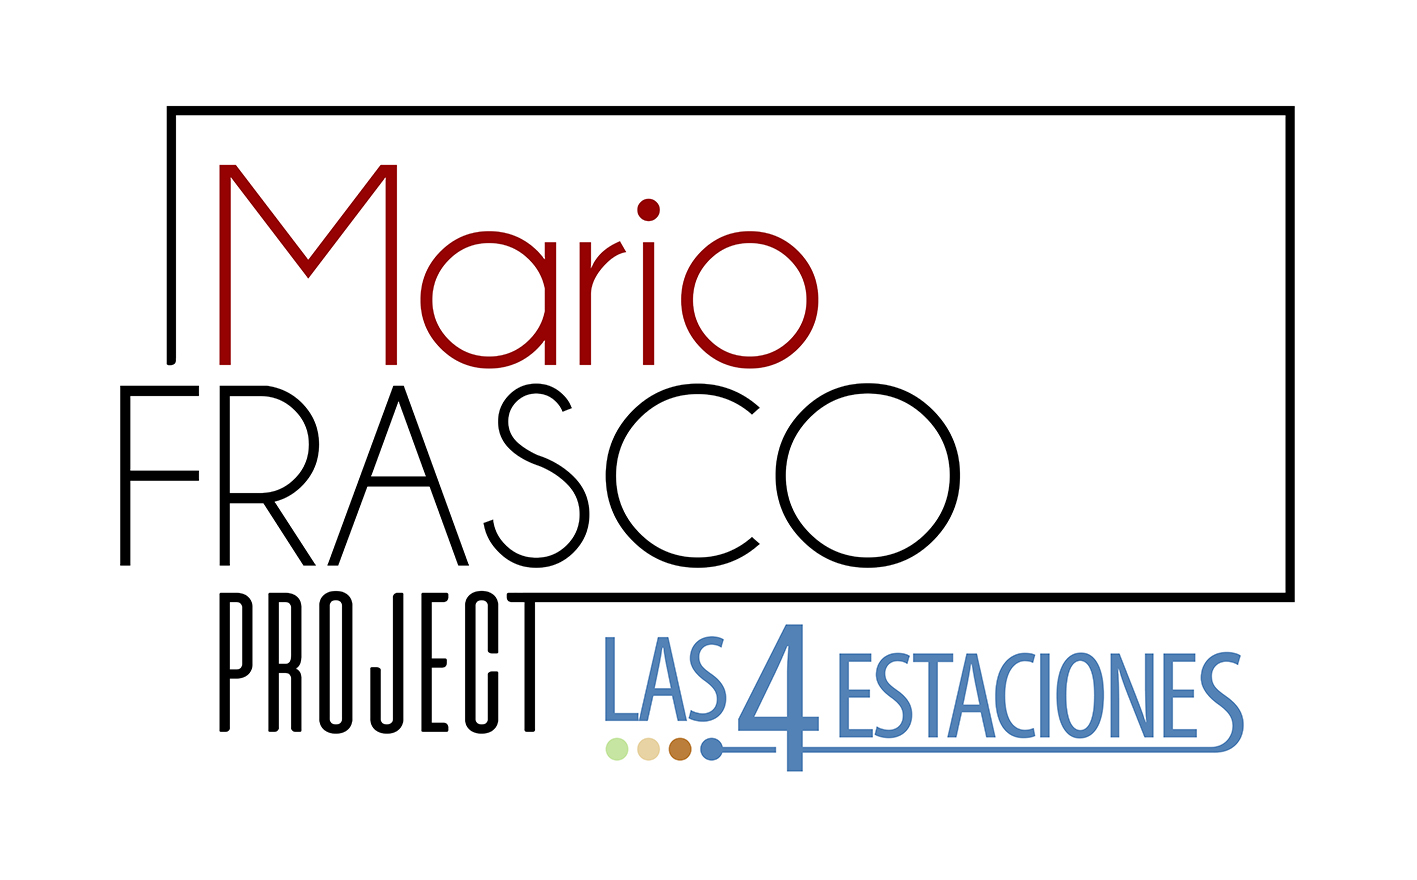 Mario Frasco project Las 4 Estaciones